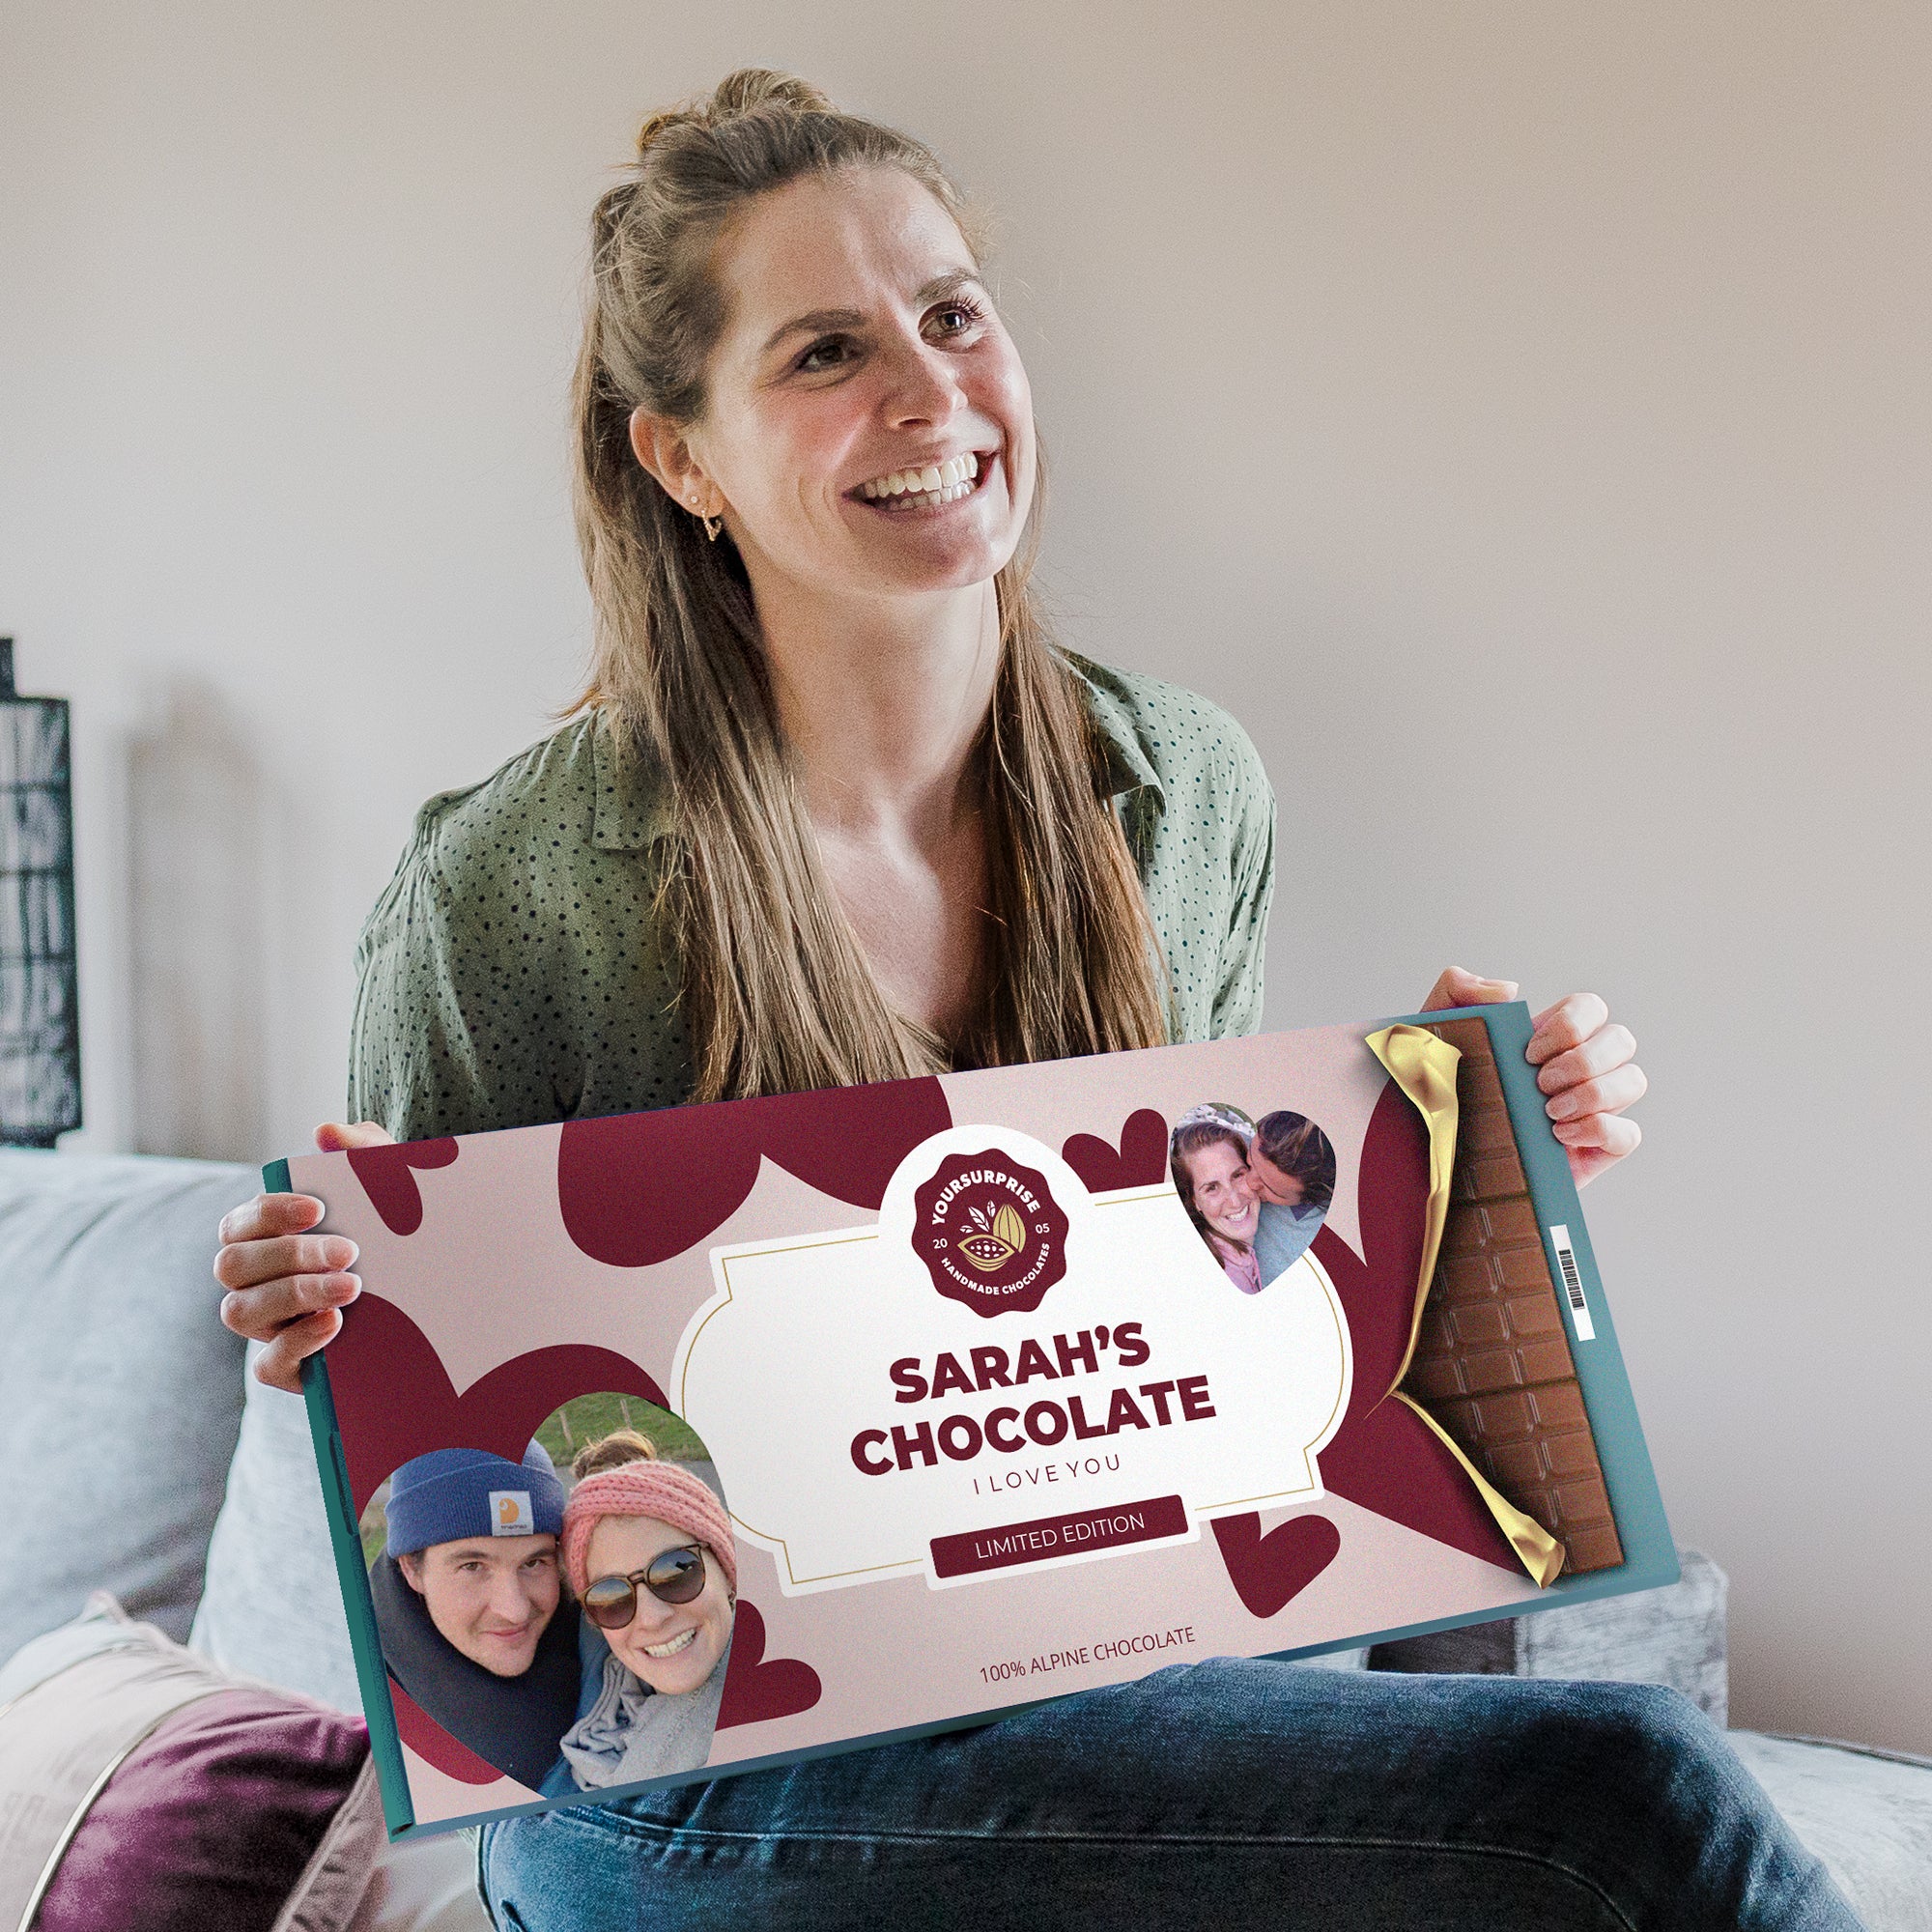 Individuellleckereien - XXL Schokolade personalisieren Milka - Onlineshop YourSurprise